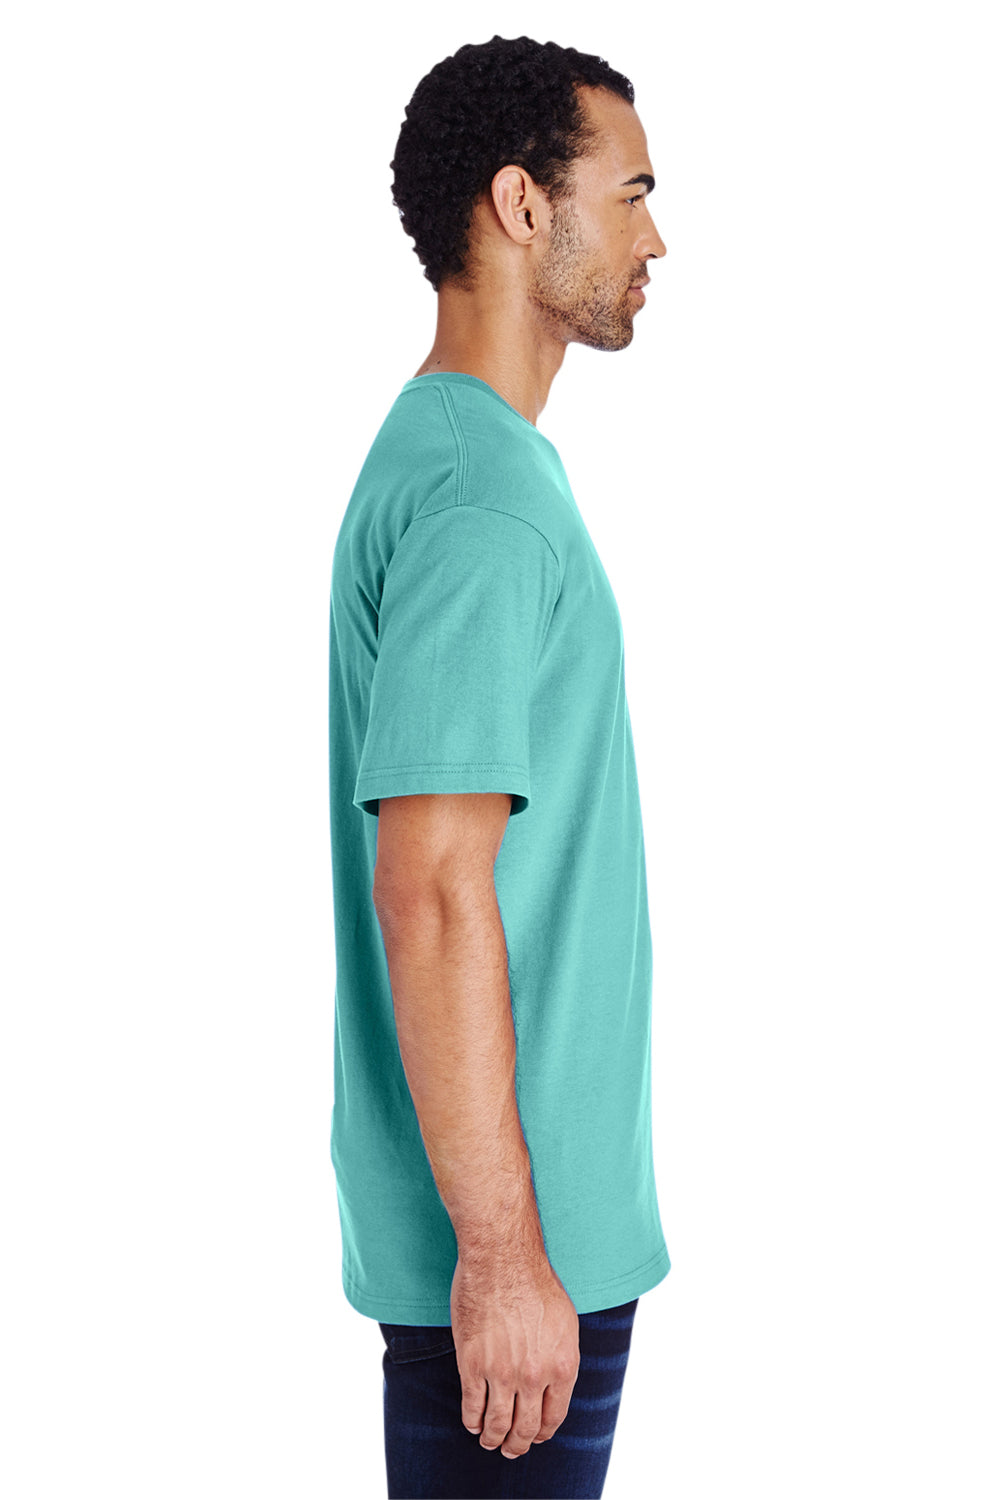 Gildan H000 Mens Hammer Short Sleeve Crewneck T-Shirt Seafoam Green Side